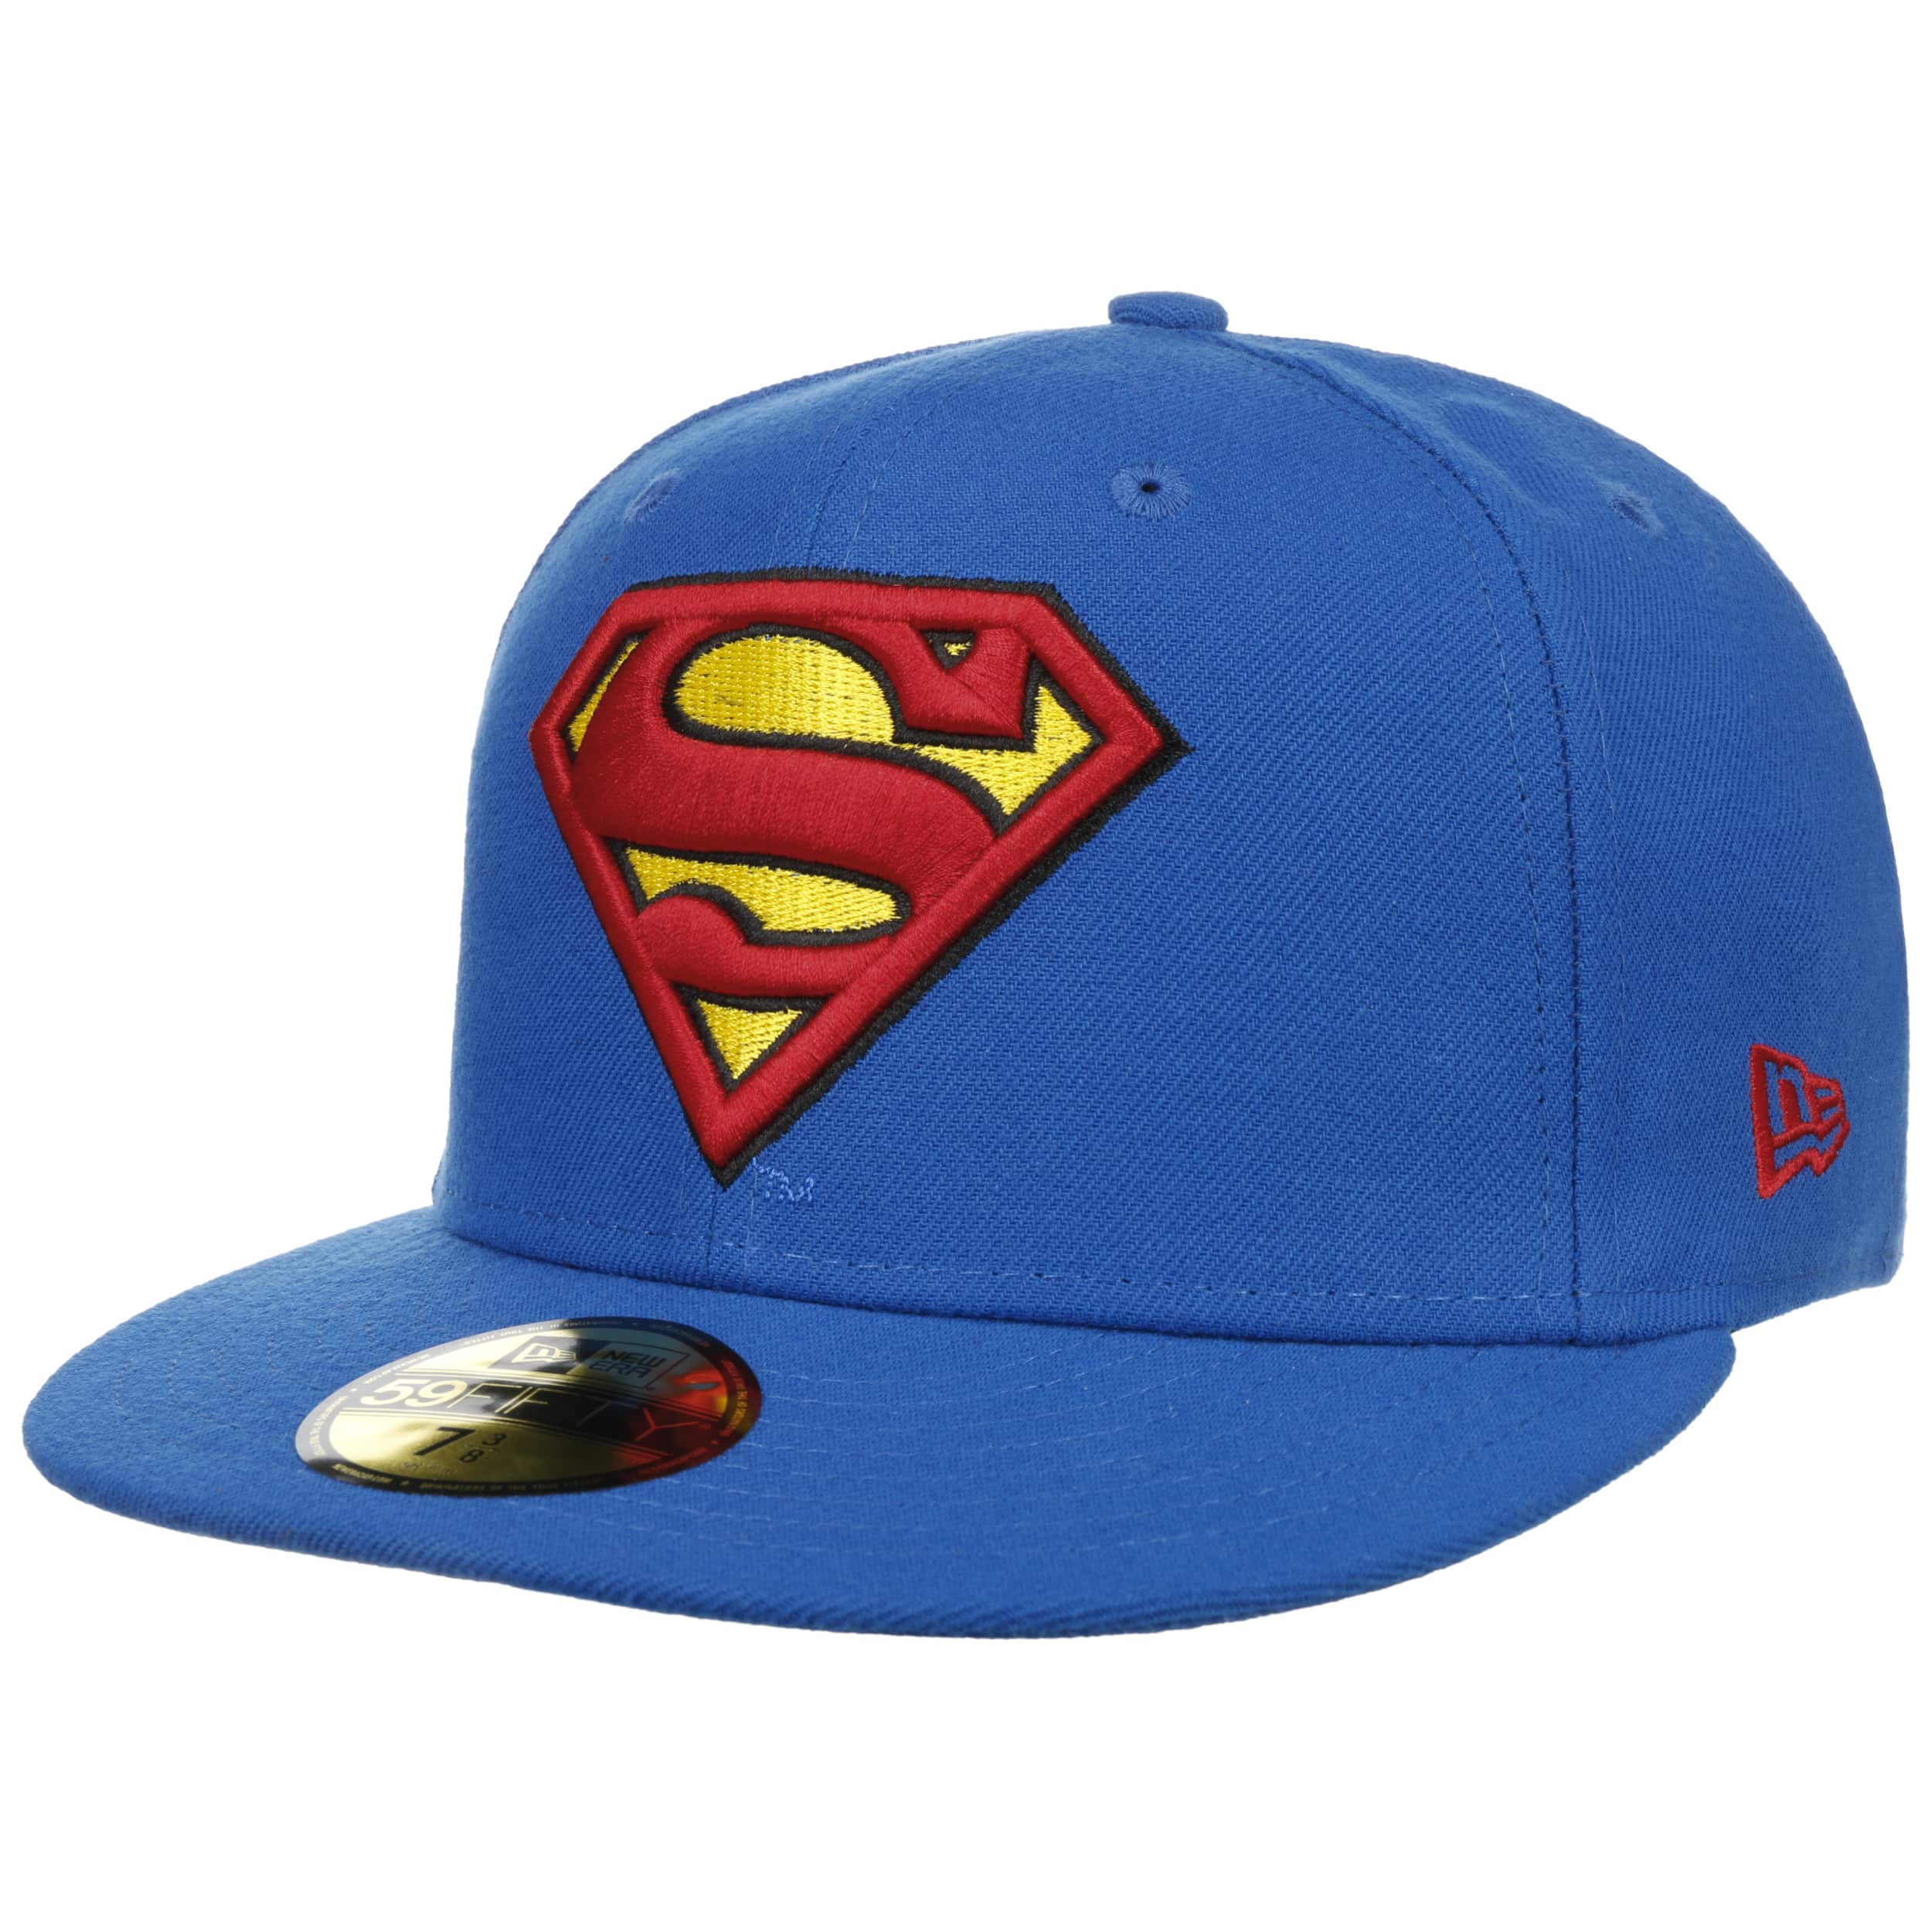 Cap одежда. Костюм cap. Cap одежда для детей. Кепка Супермен. Hat 30